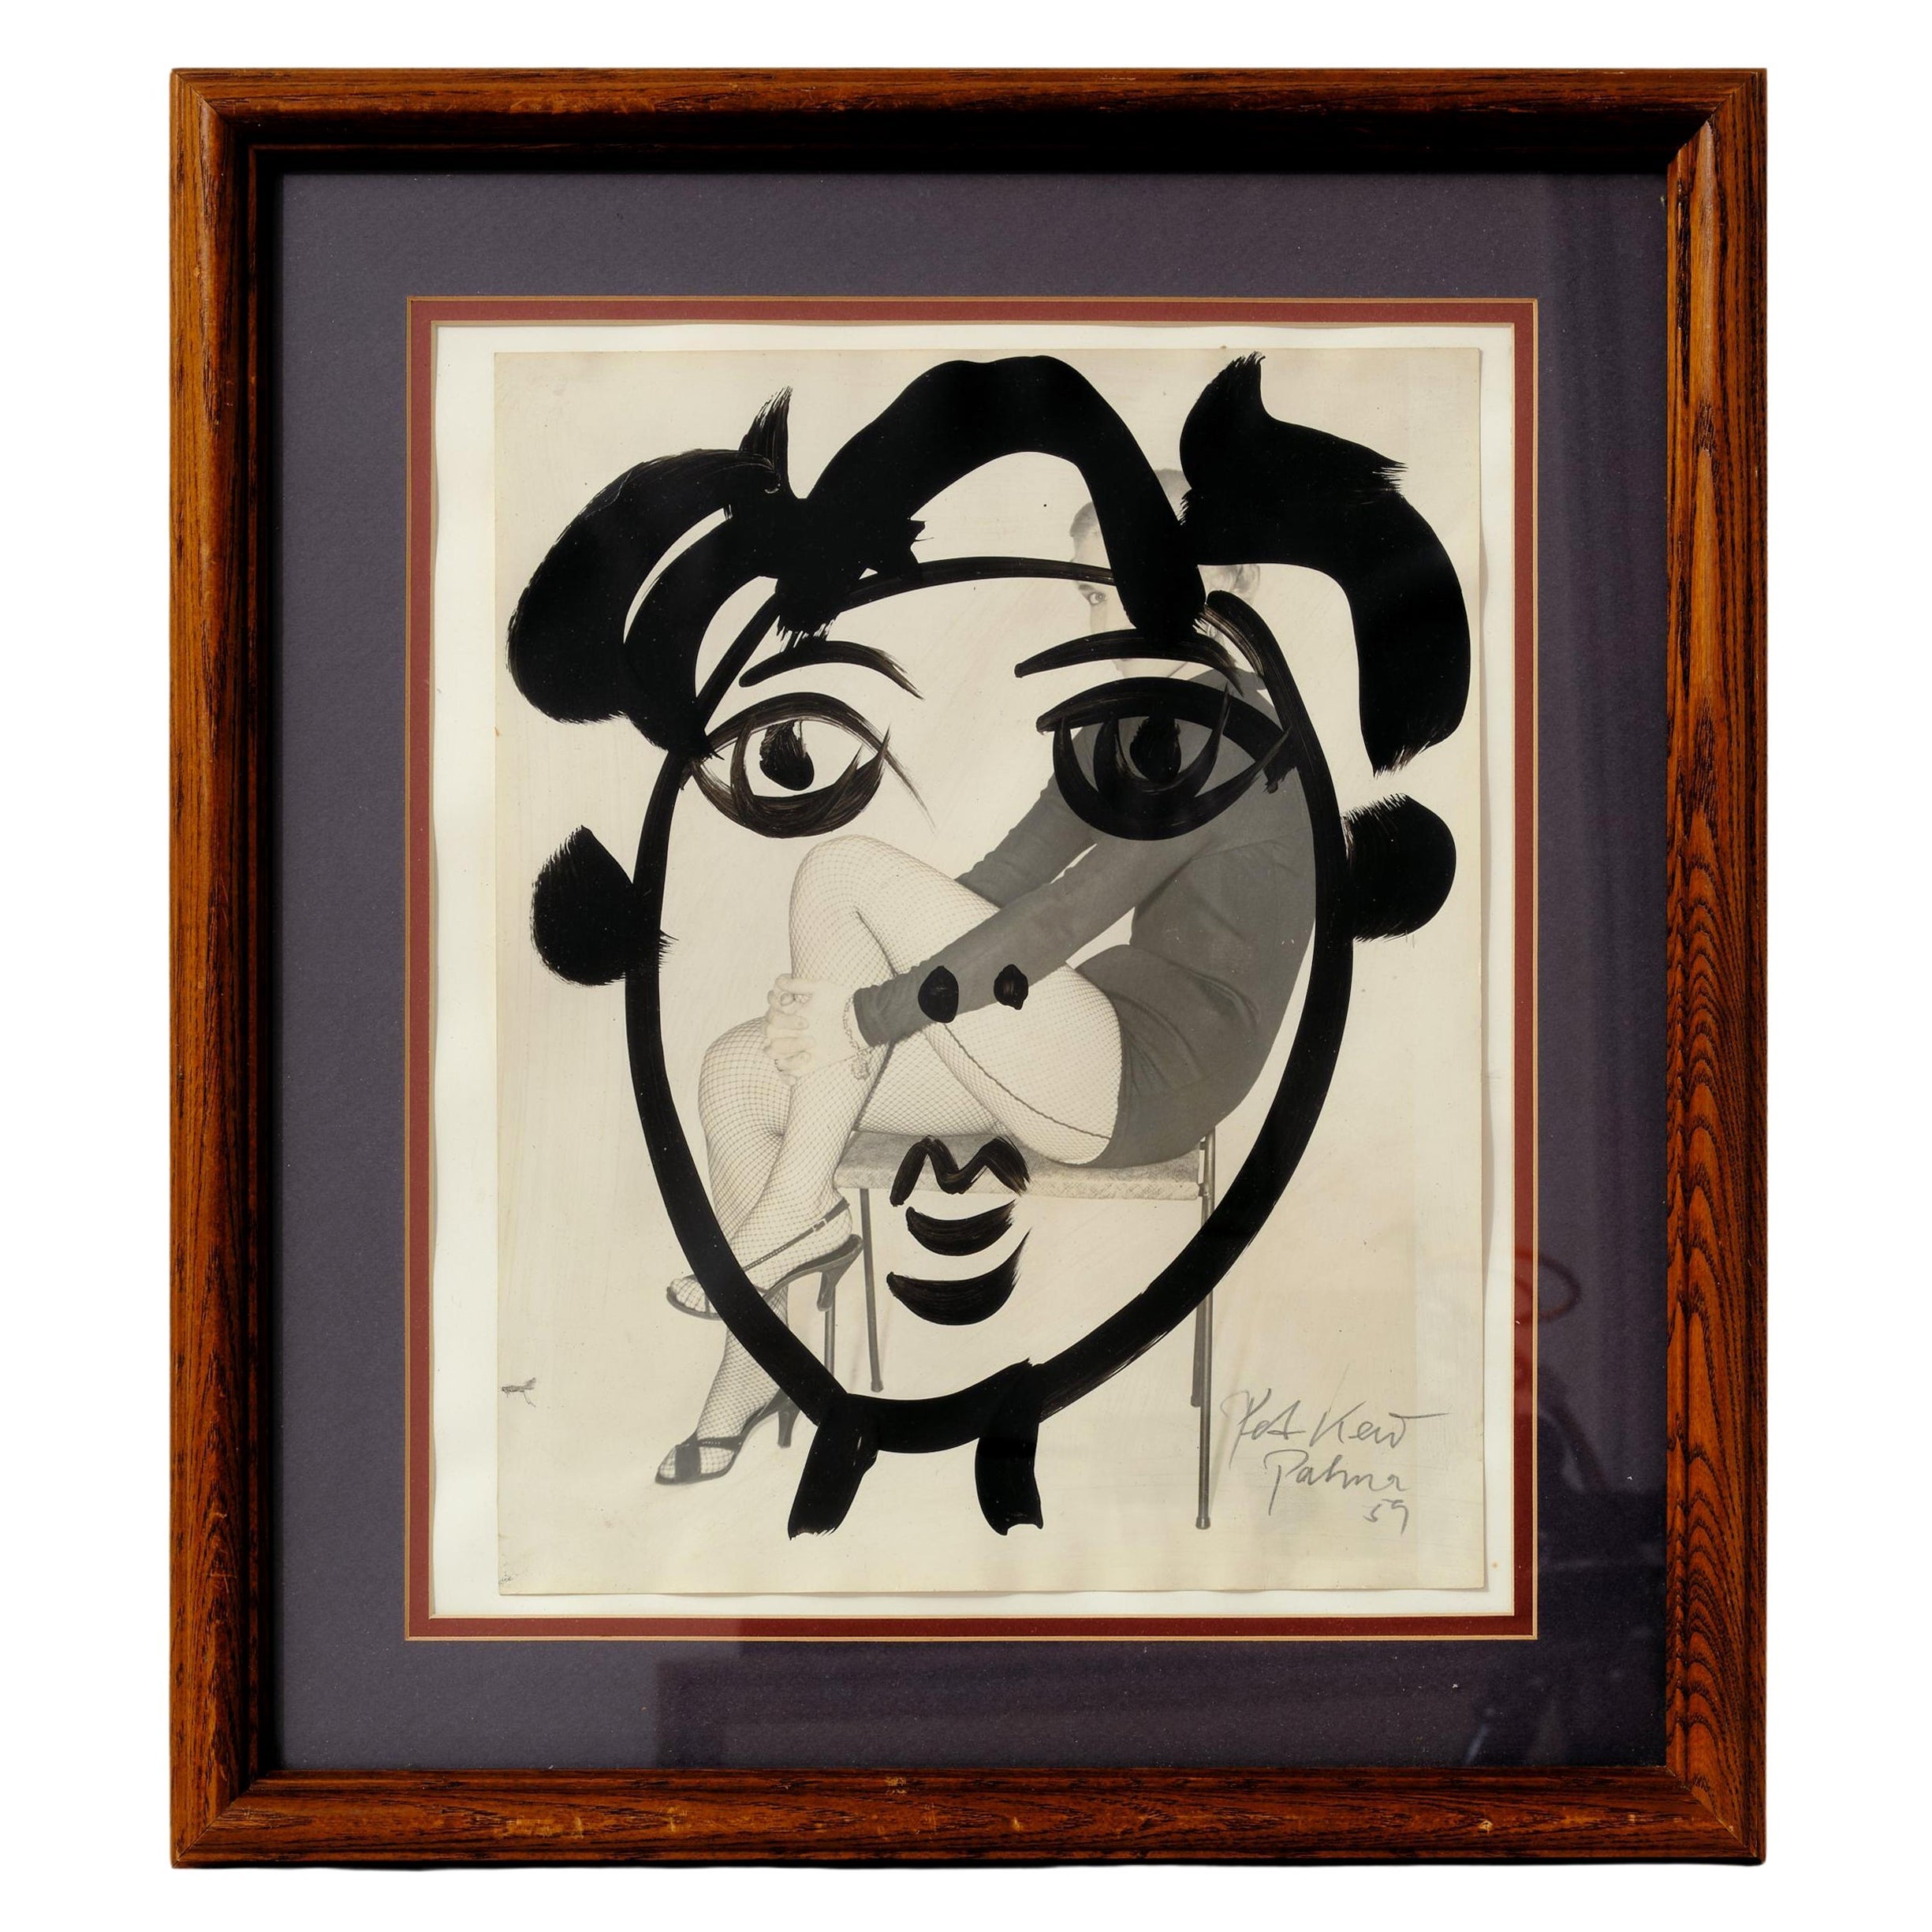 Gemälde von Peter Keil, gerahmtes Gesicht mit Mode Dame auf dem Rückgrund, um 1959